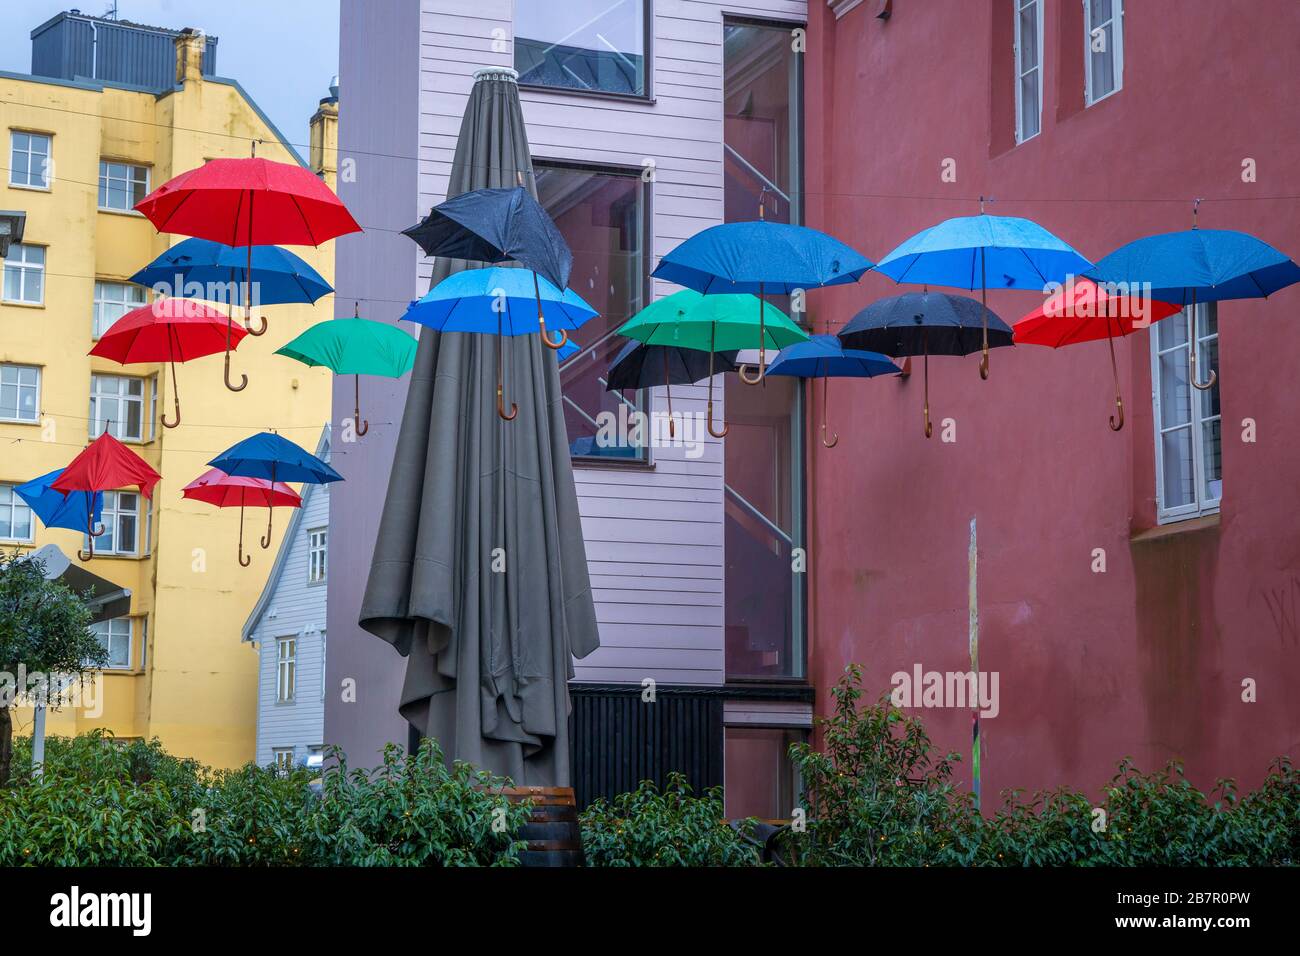 Bunte Regenschirme in Bergen, Norwegen Stockfotografie - Alamy